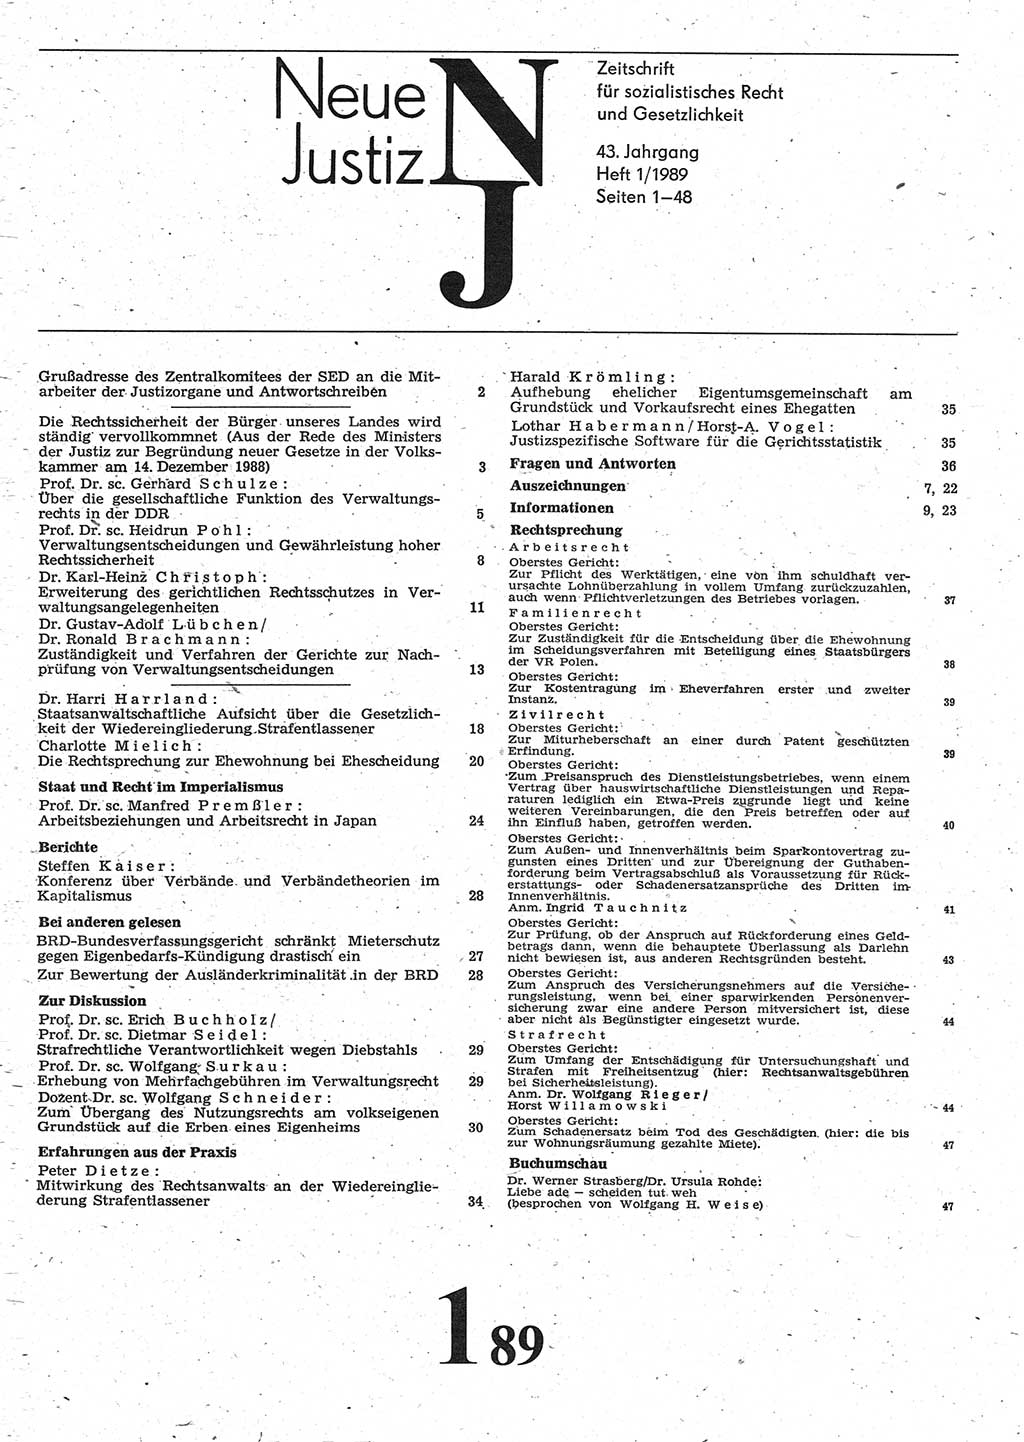 Neue Justiz (NJ), Zeitschrift für sozialistisches Recht und Gesetzlichkeit [Deutsche Demokratische Republik (DDR)], 43. Jahrgang 1989, Seite 1 (NJ DDR 1989, S. 1)